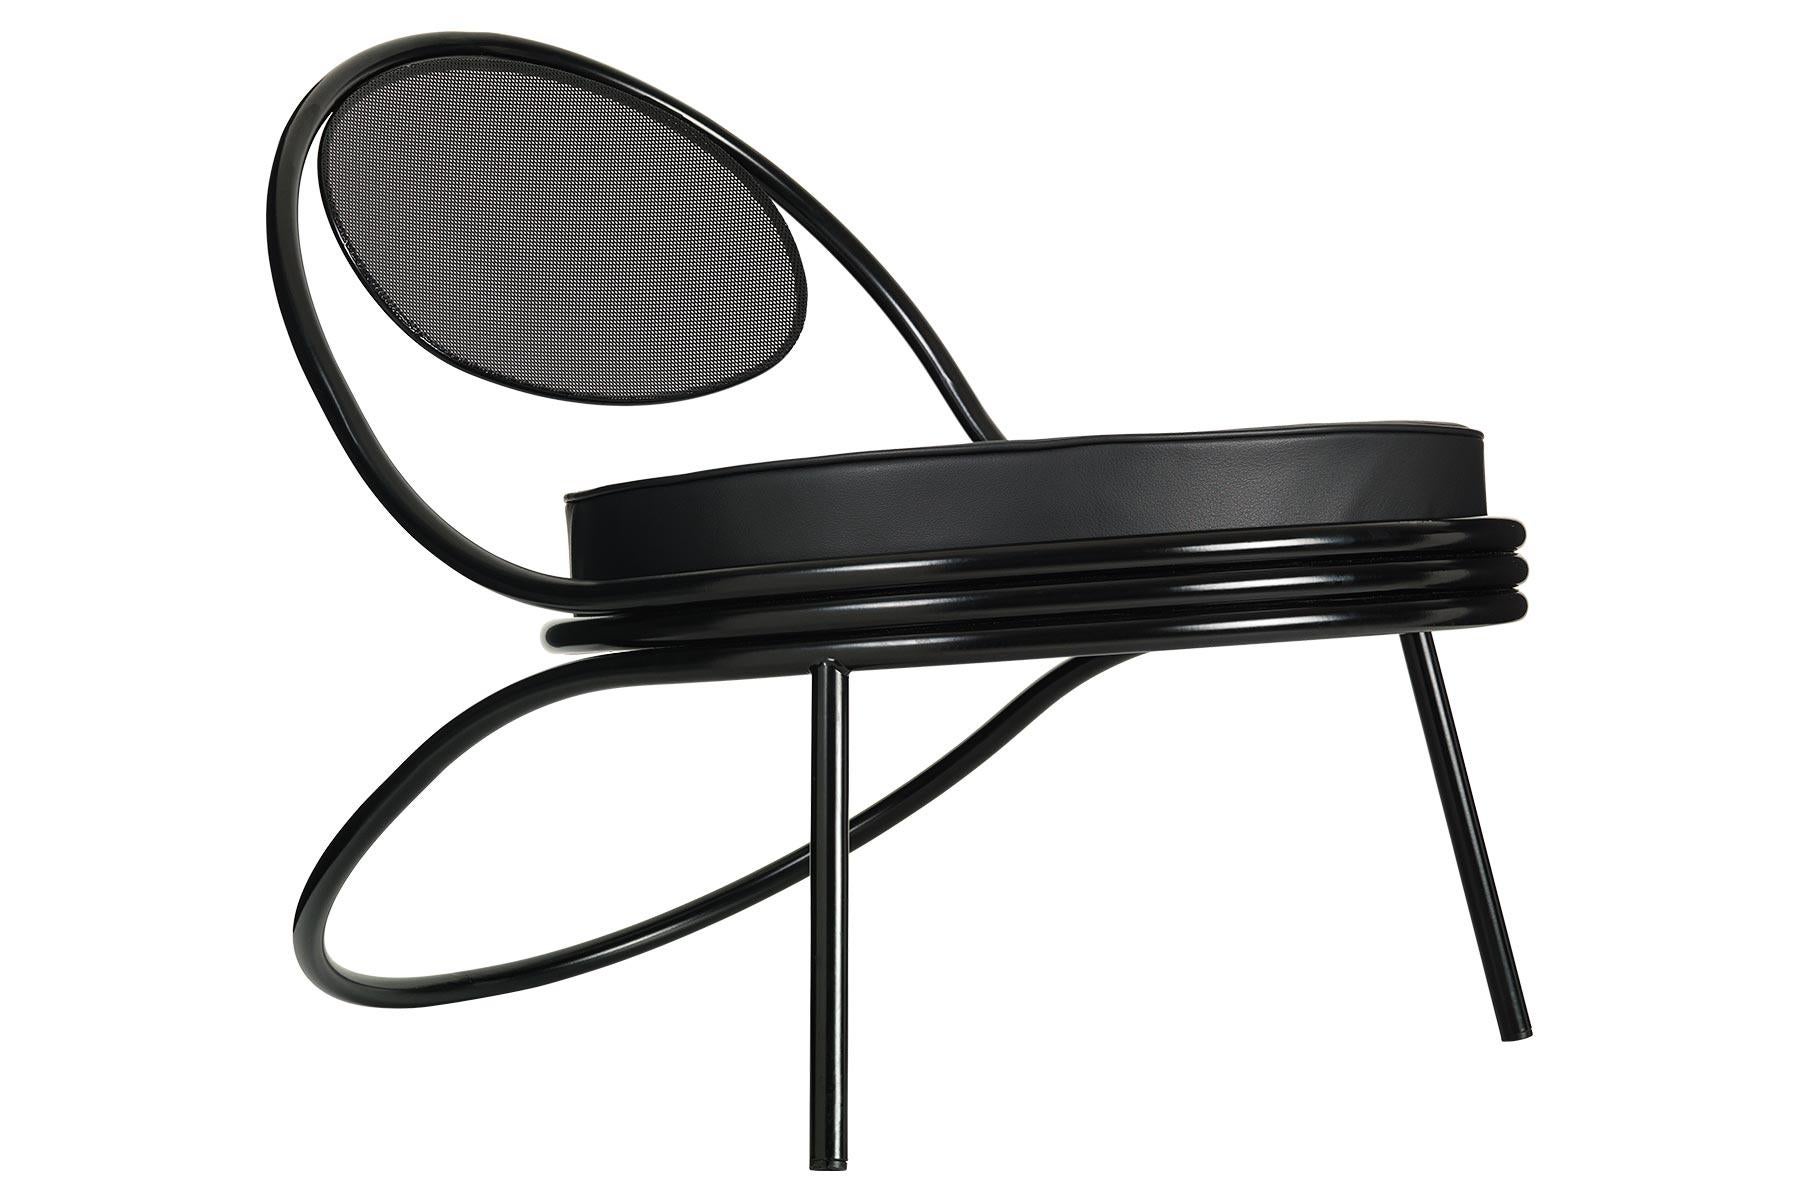 Der Copacabana-Sessel wurde 1955 von Mathieu Matégot entworfen. Der niedrige Loungesessel Copacabana wirkt wie mit einem einzigen Bleistiftstrich entworfen, und die Eleganz des Sessels liegt in der kontinuierlichen Kraft der Linie. Er besteht aus